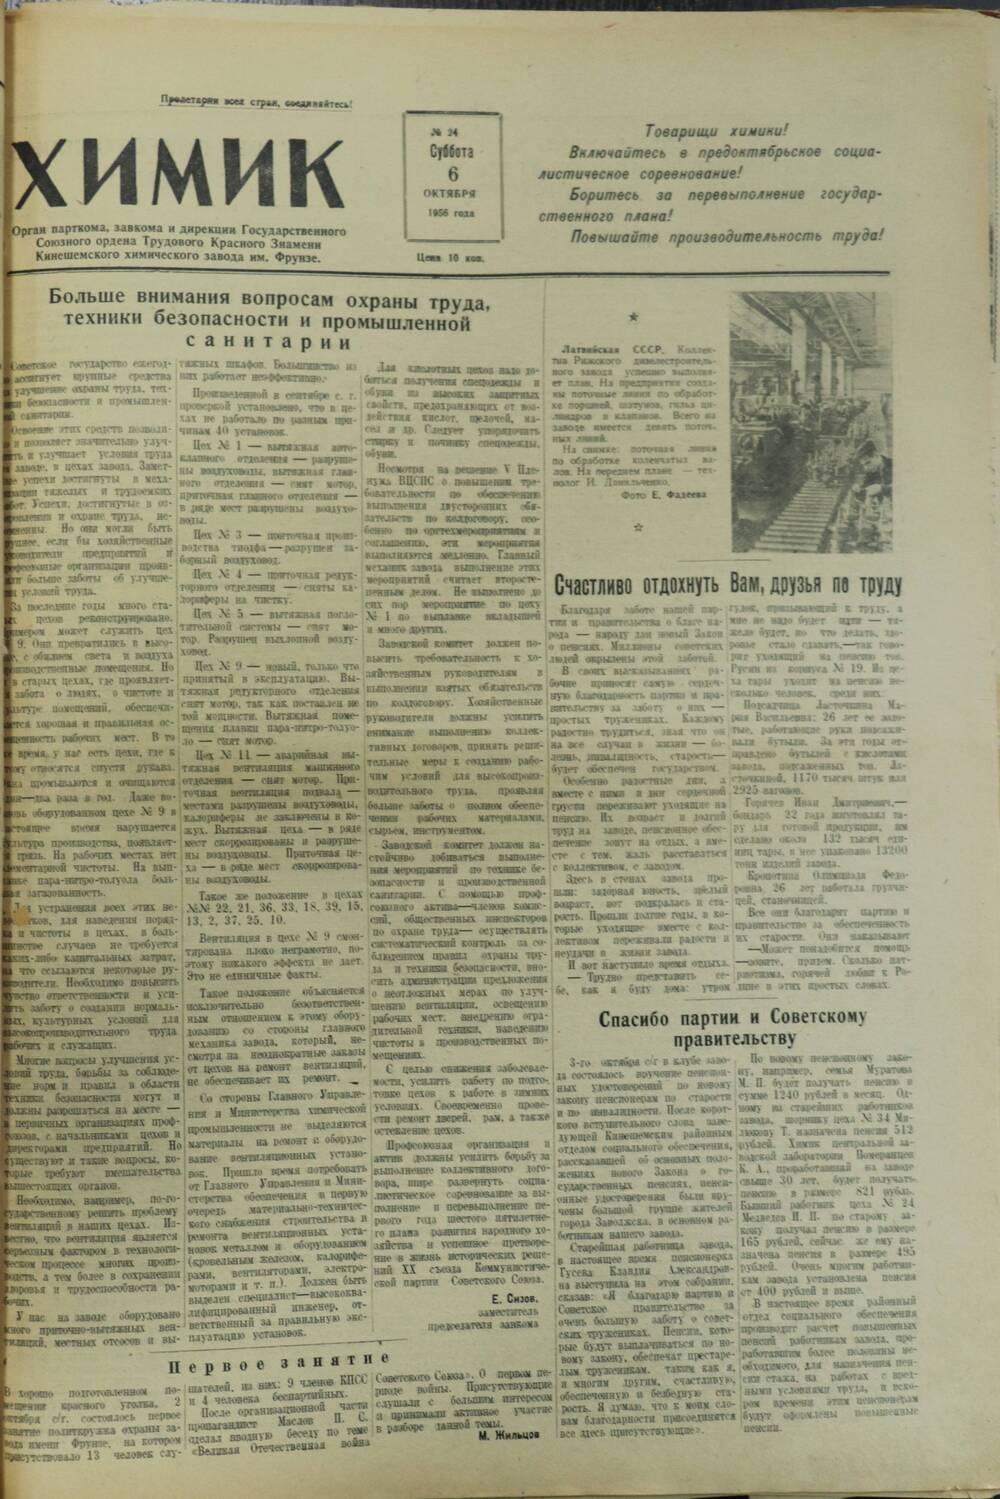 Газета «Химик» № 24 от 6 октября 1956 года.